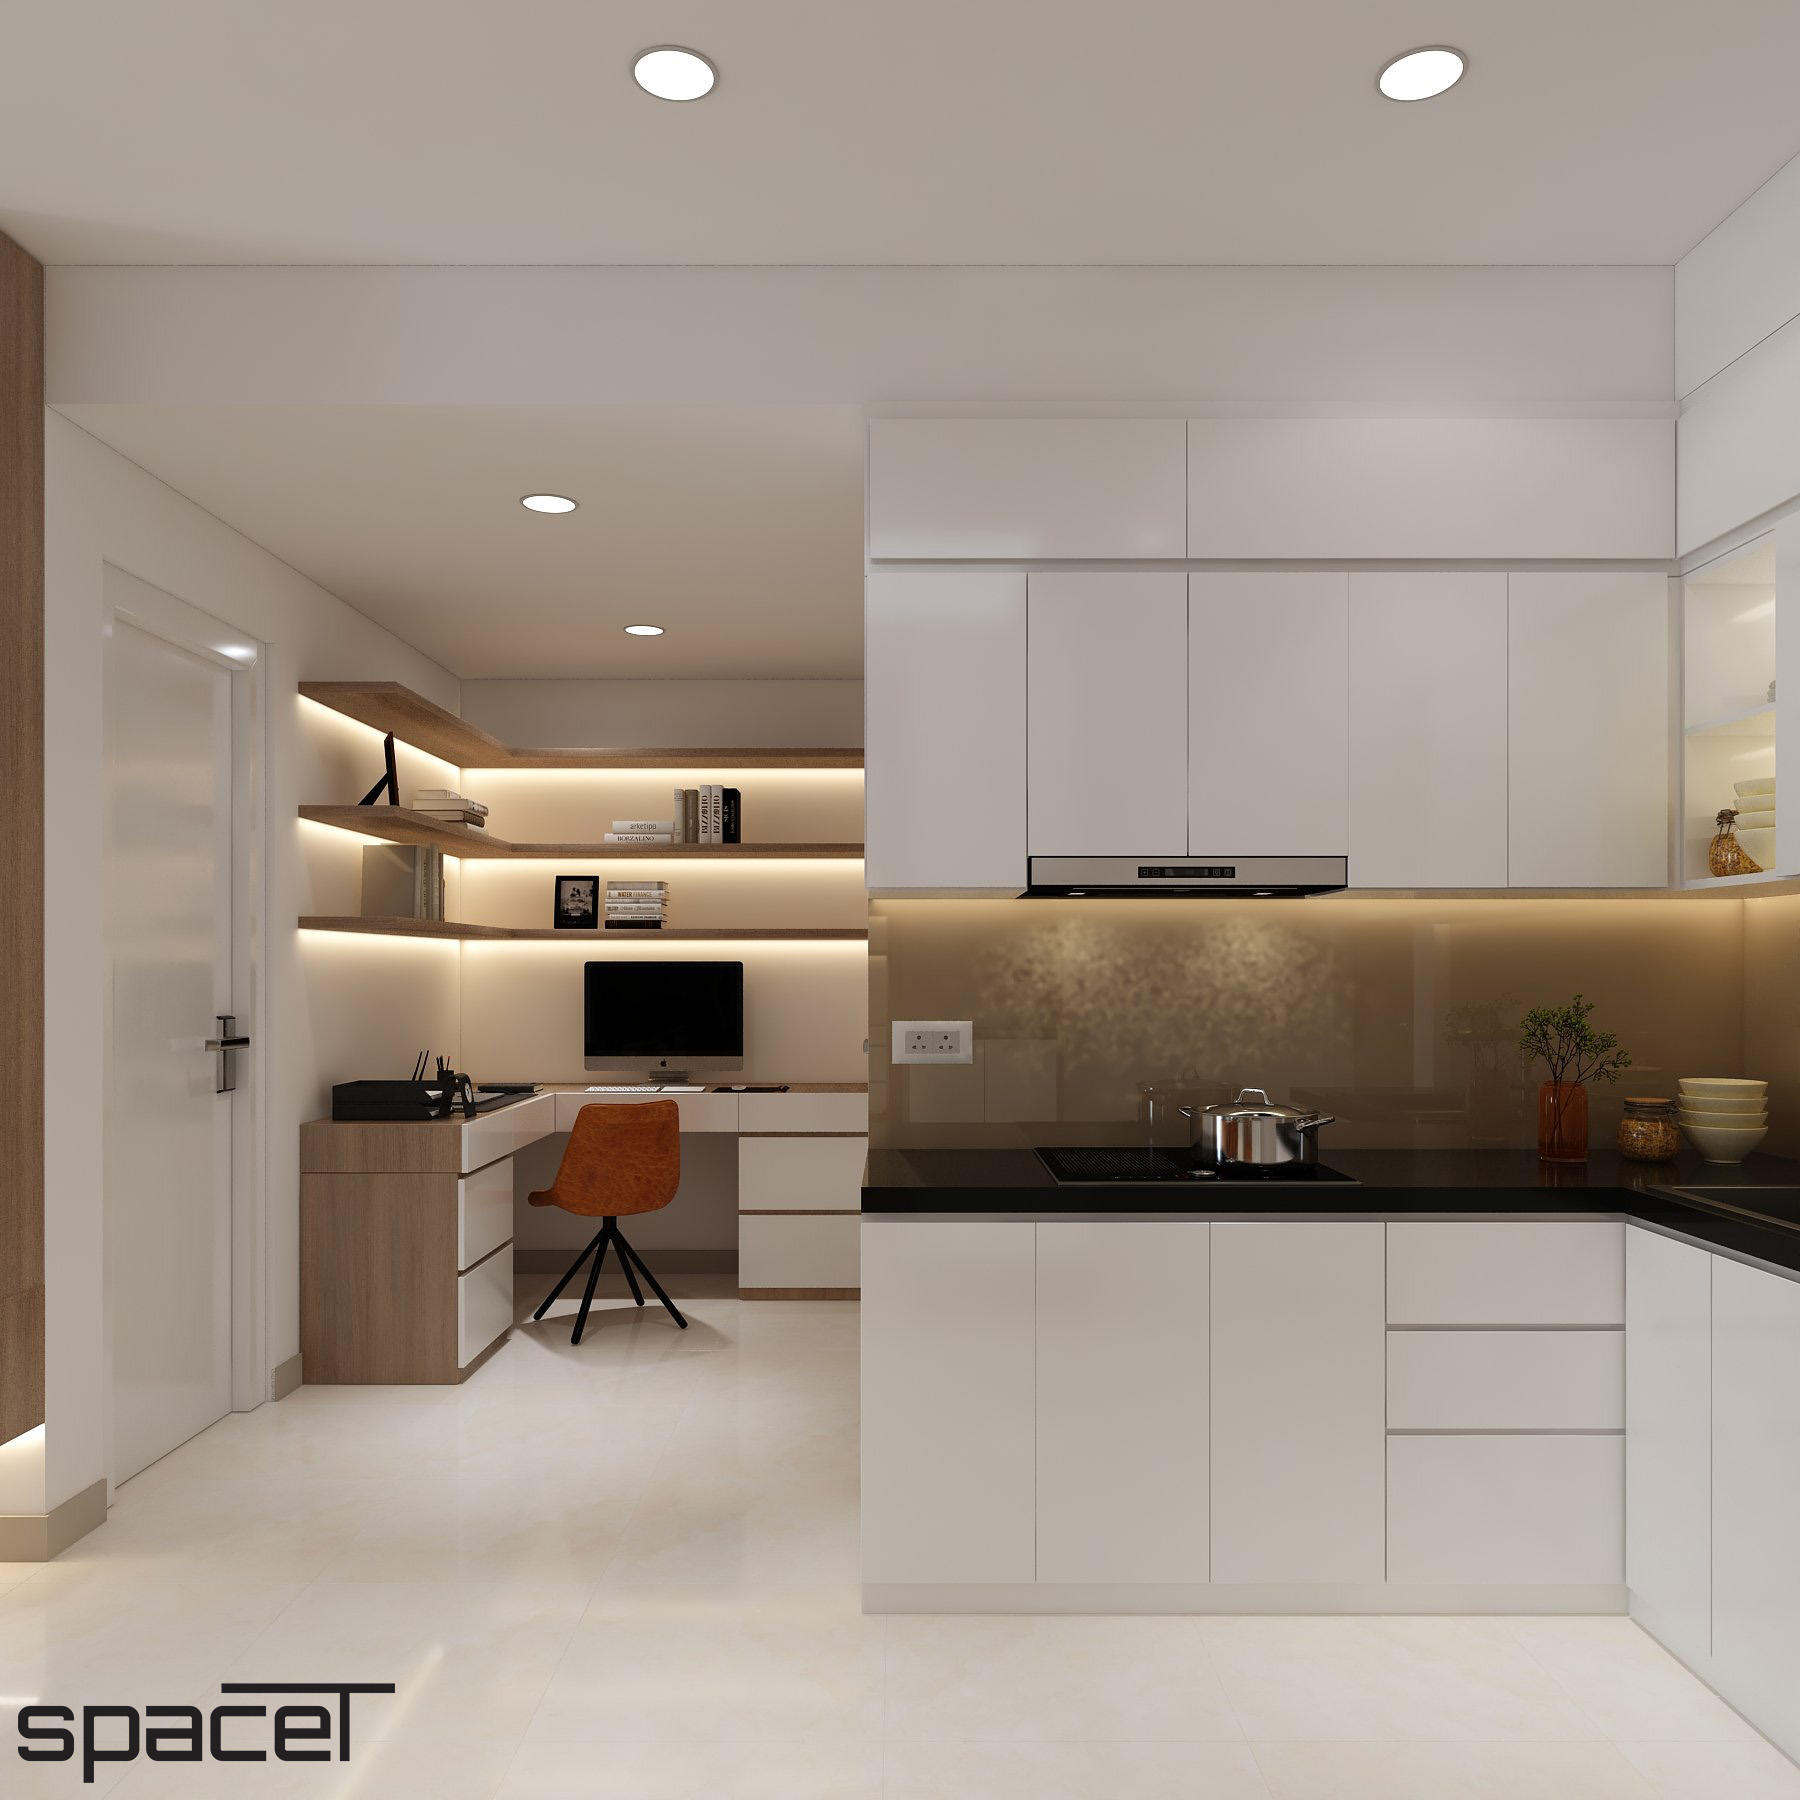 Phòng bếp, không gian làm việc, phong cách Hiện đại Modern, thiết kế concept nội thất, căn hộ chung cư Ricca